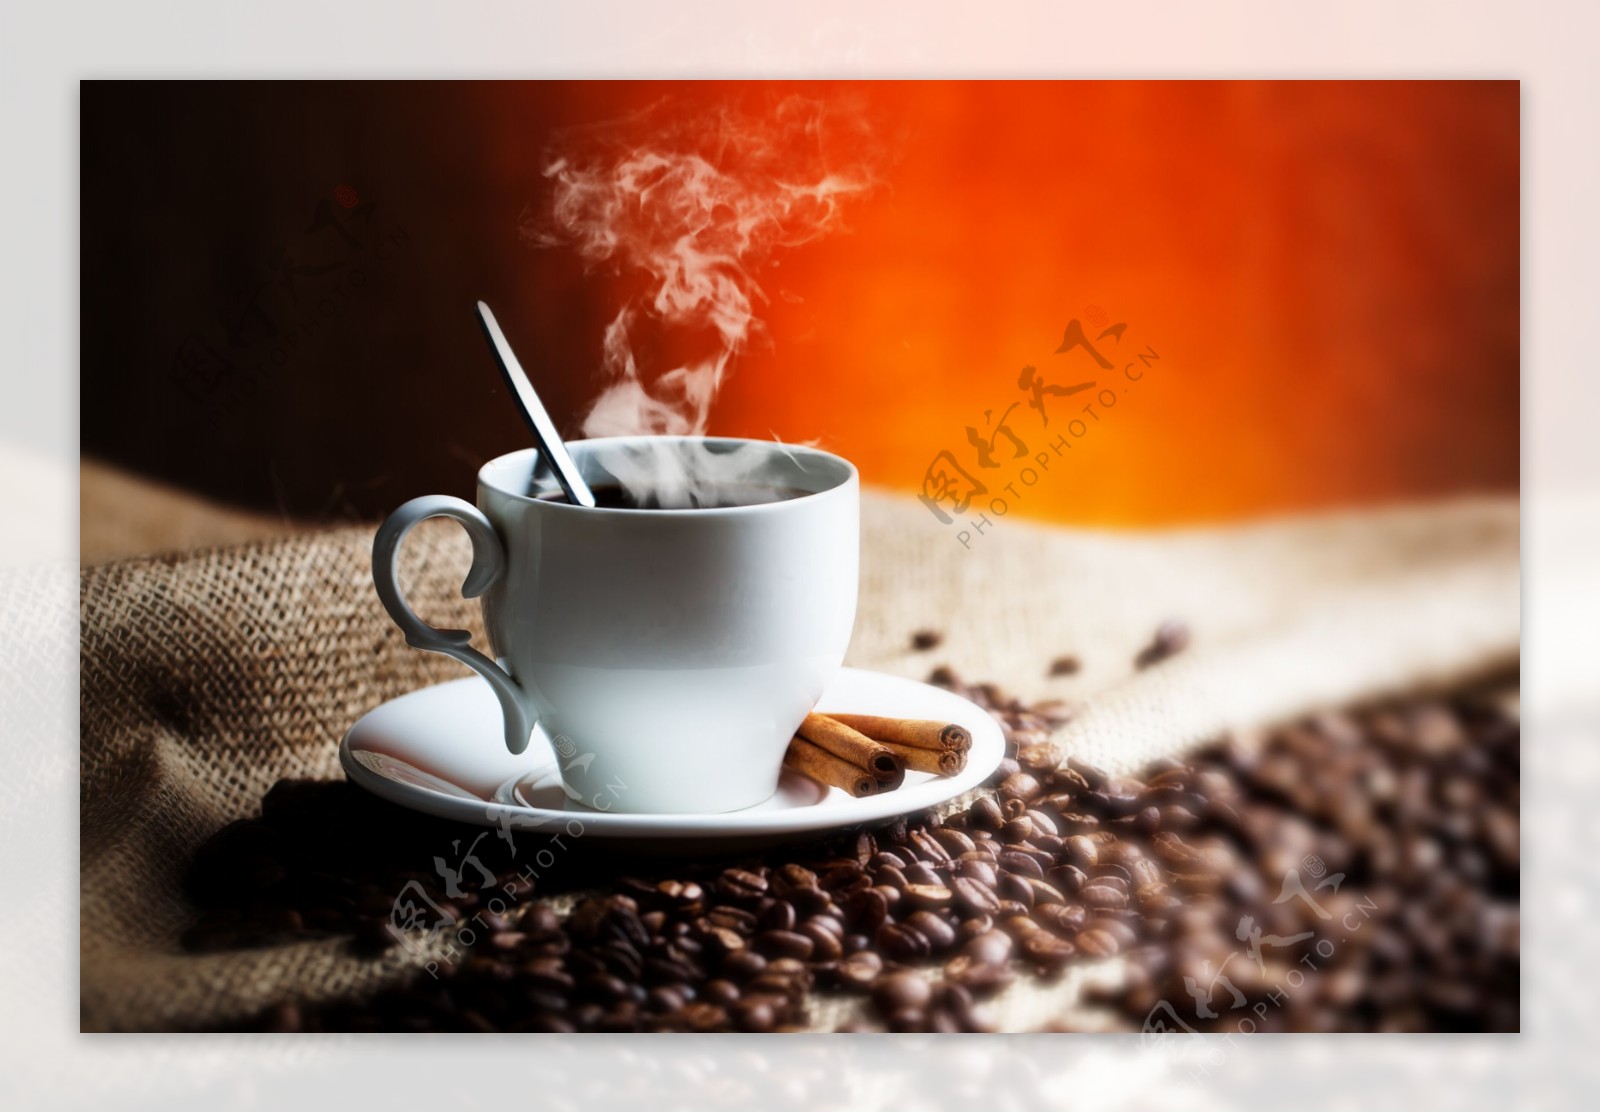 一杯热咖啡和咖啡豆图片